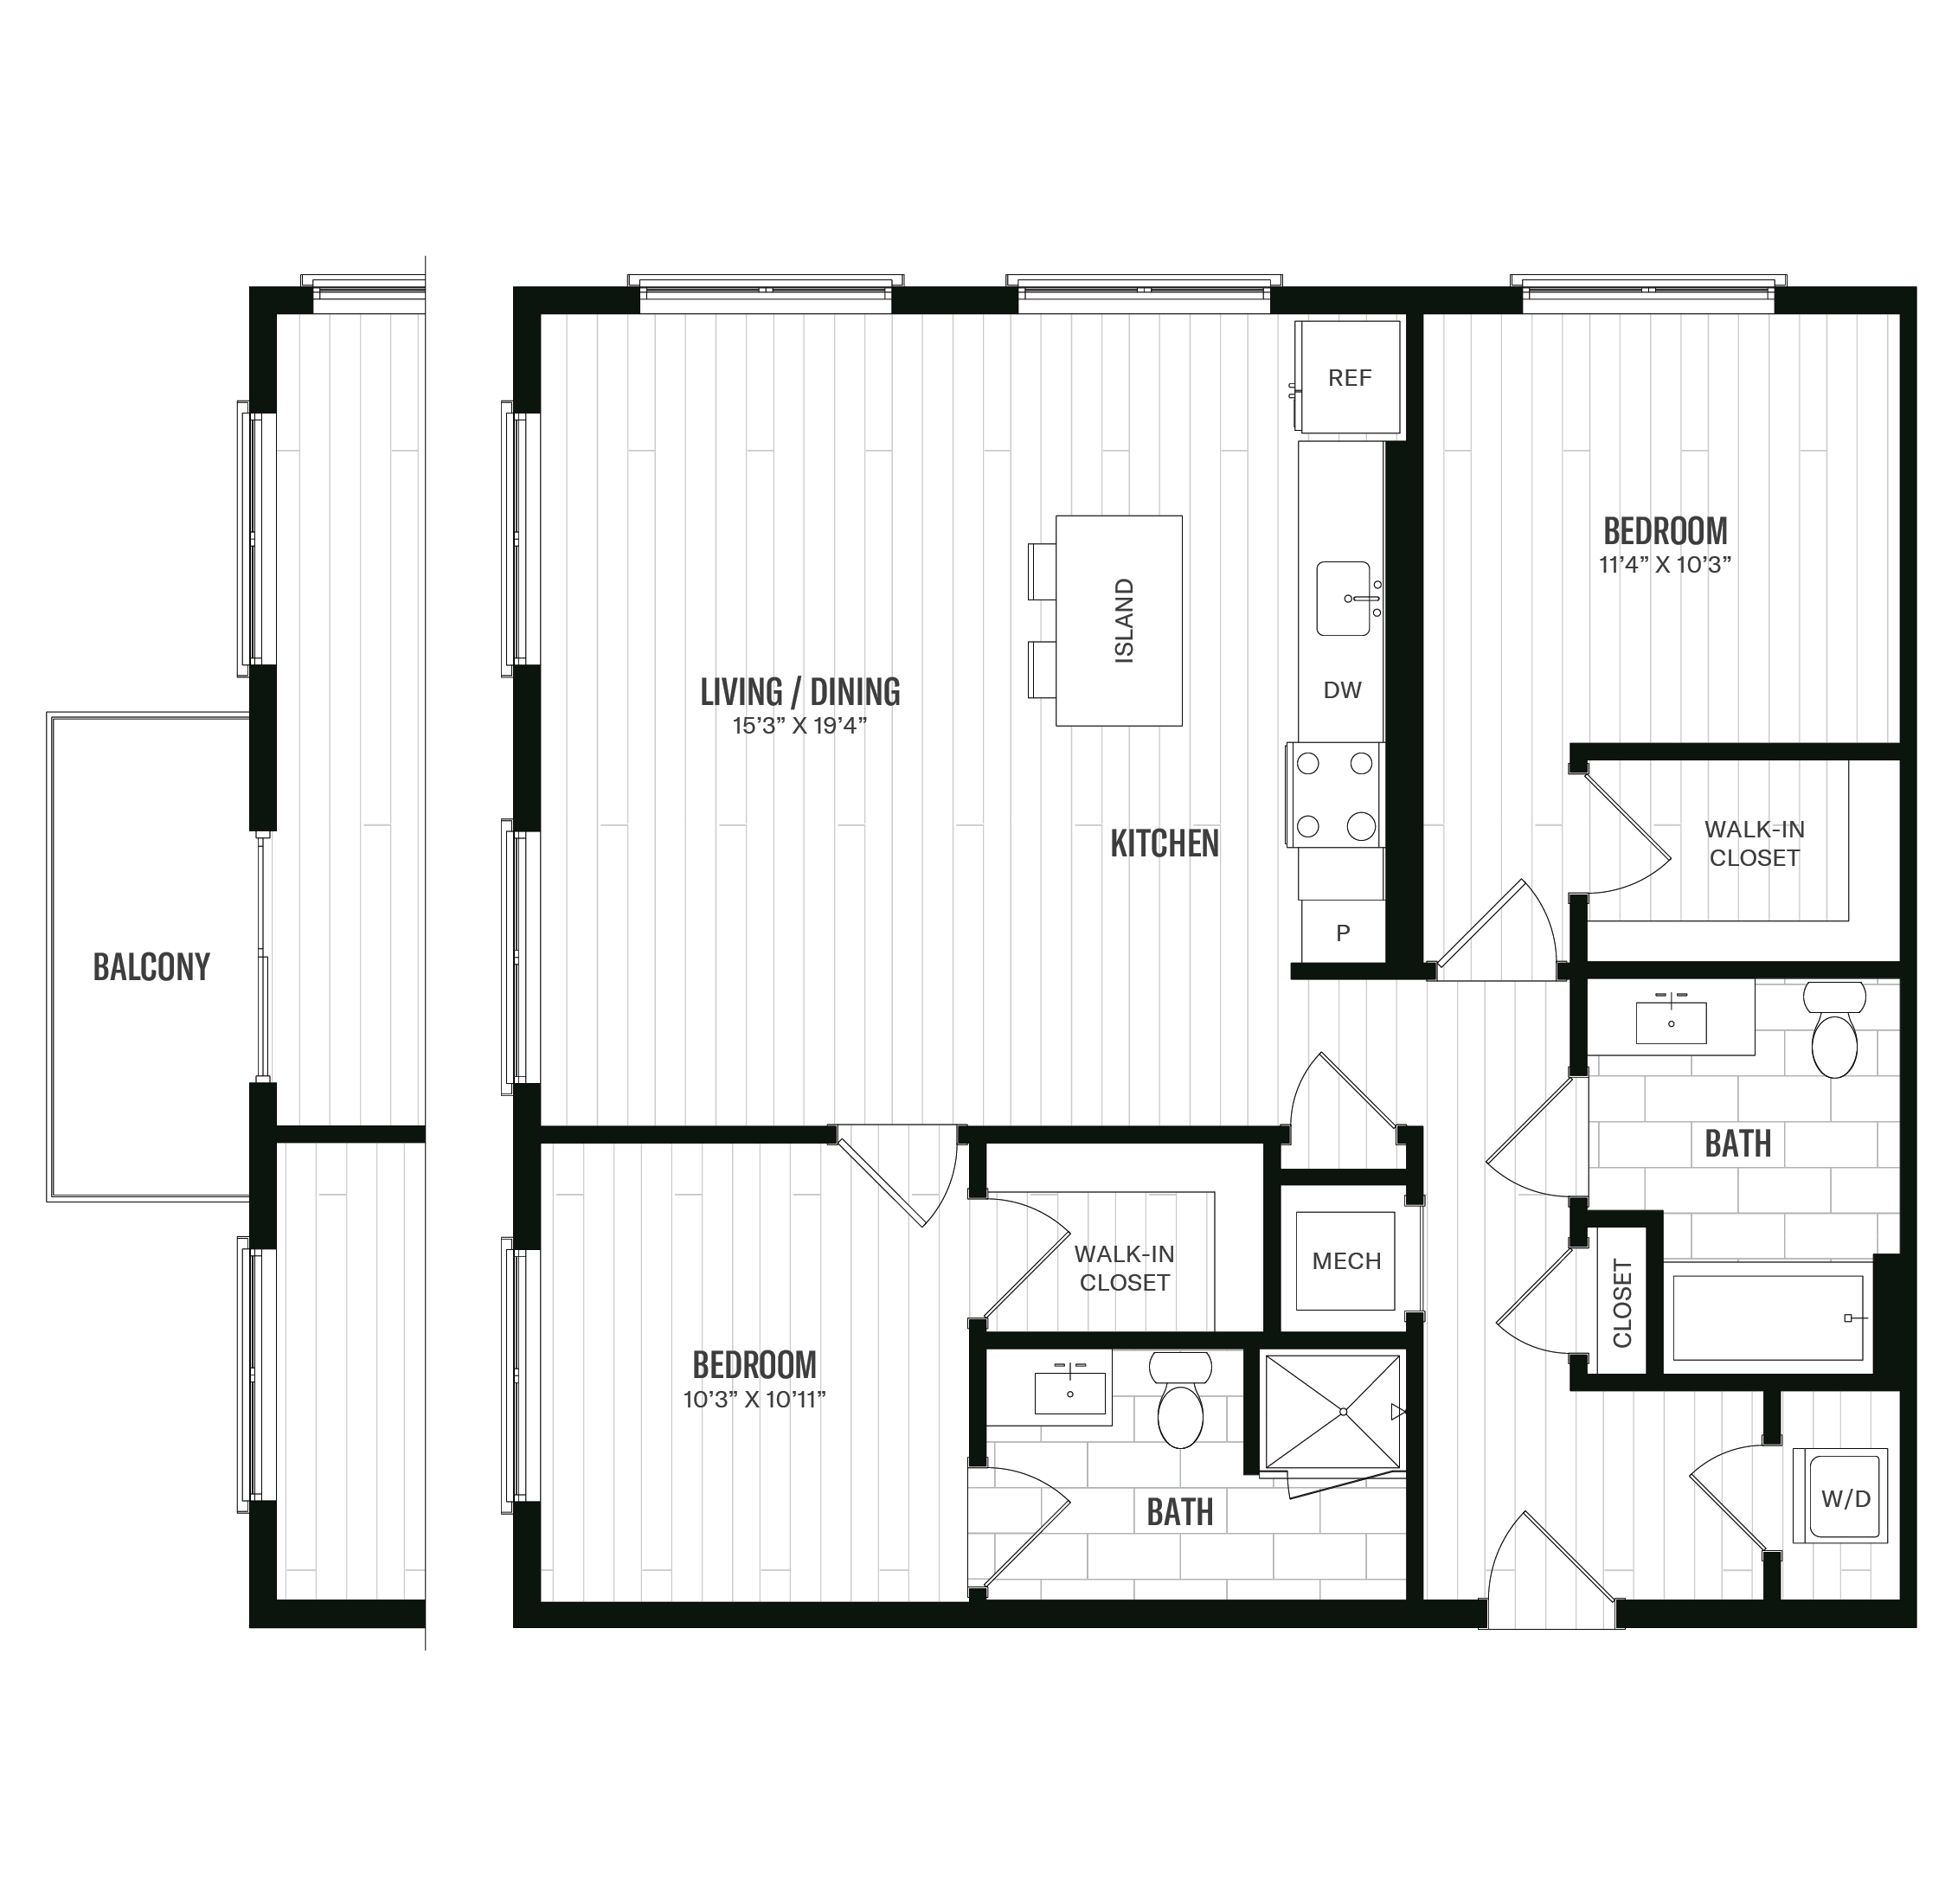 Floorplan image of unit 202